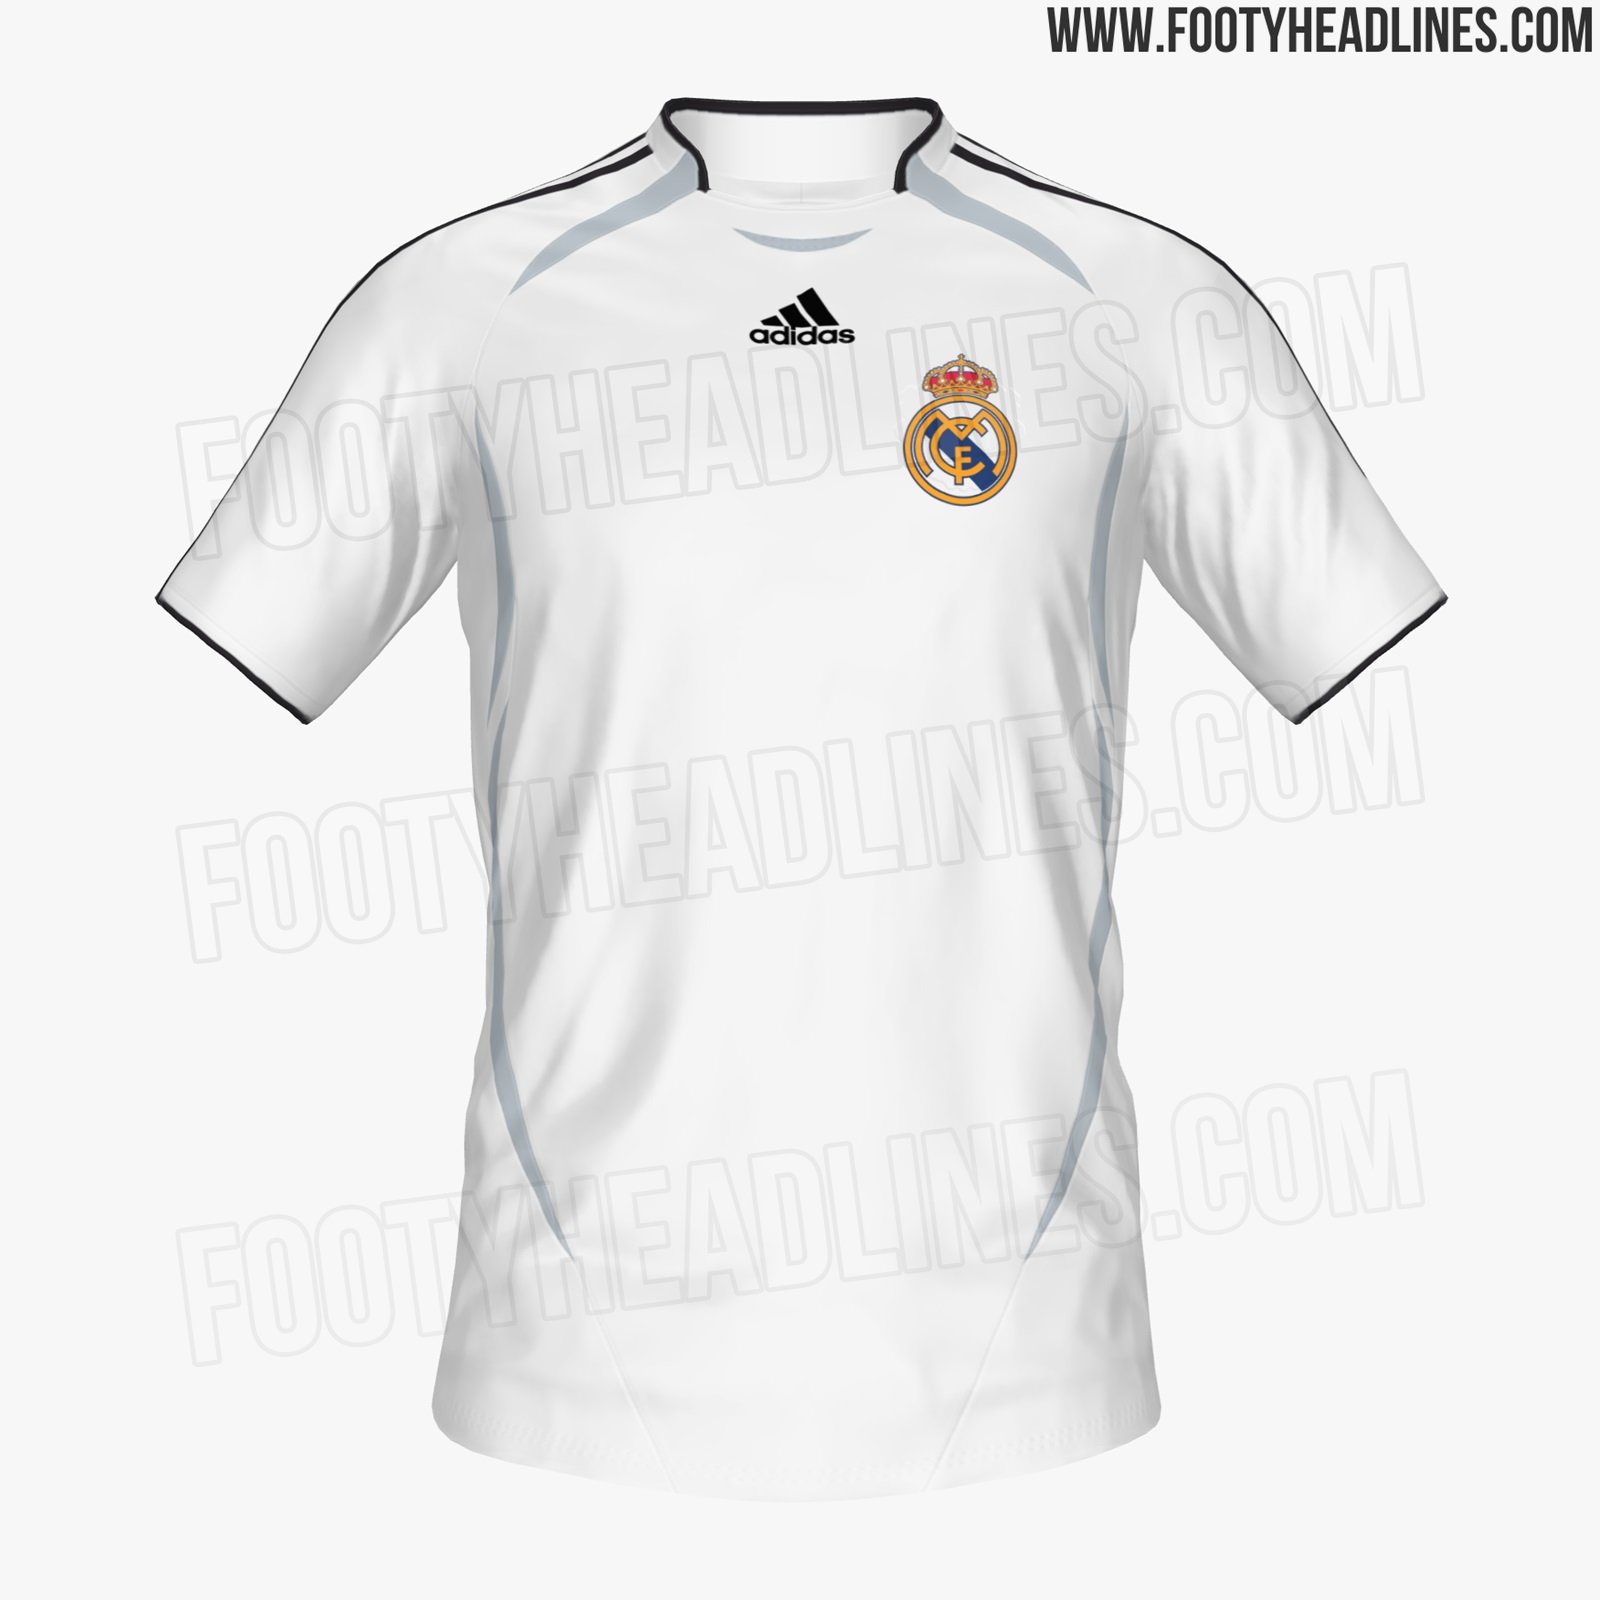 RealEspartaβ on Twitter: "Real Madrid Teamgeist 2022. Camiseta de Adidas que saldrá a venta en noviembre-diciembre, en el diseño de la temporada 2006-07. https://t.co/3fAigrCOIN" / Twitter